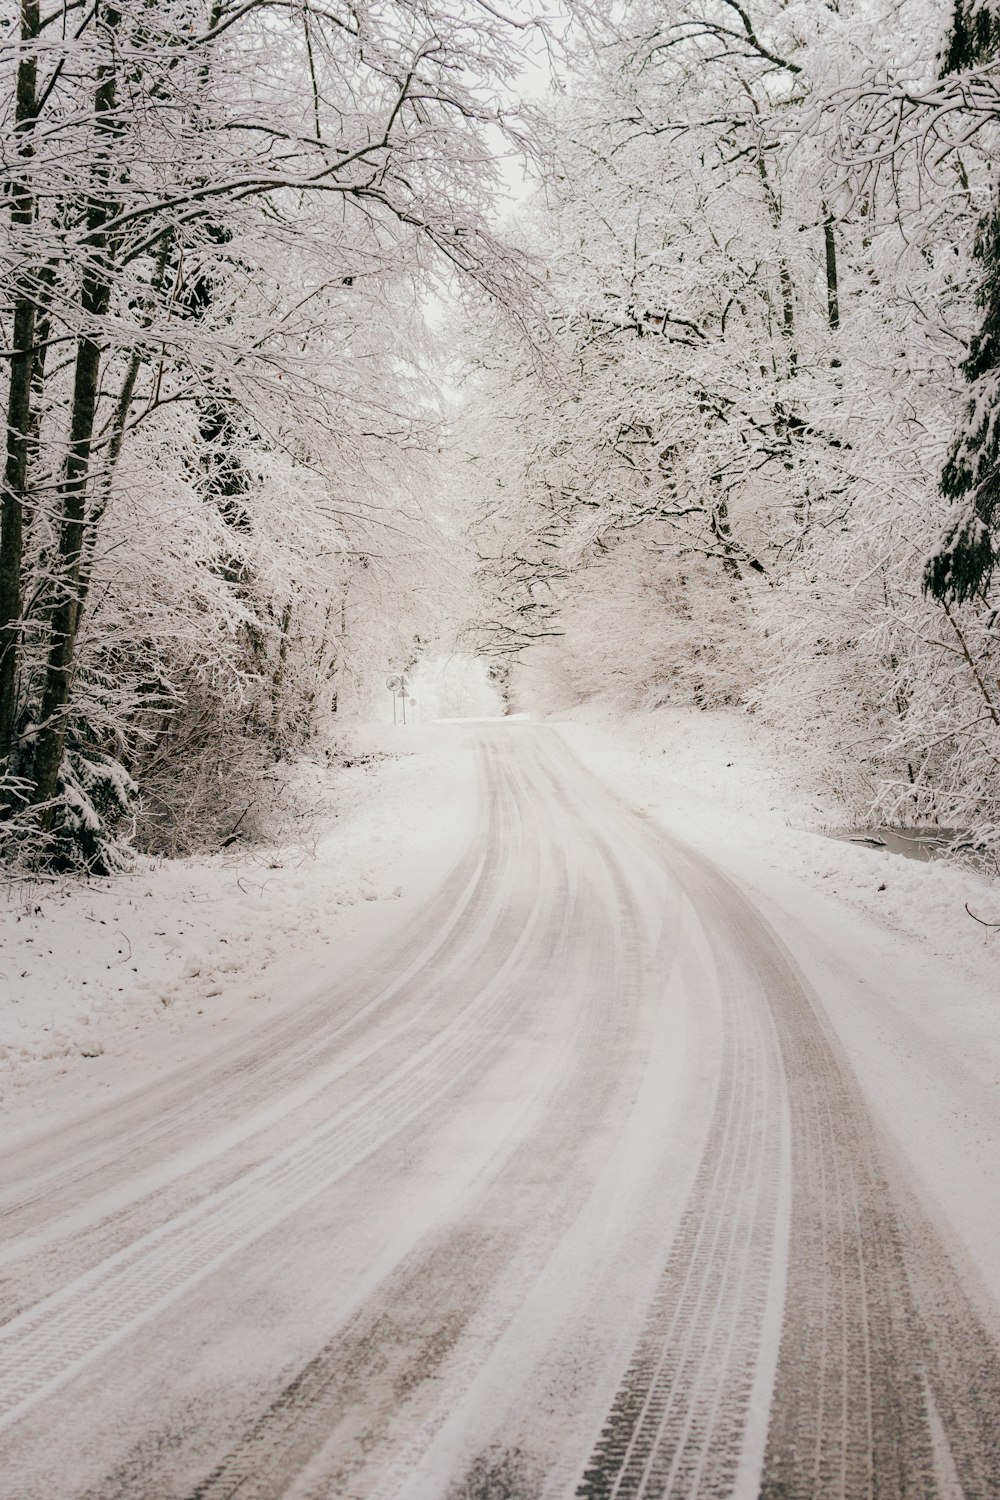 estrada coberta de neve entre árvores